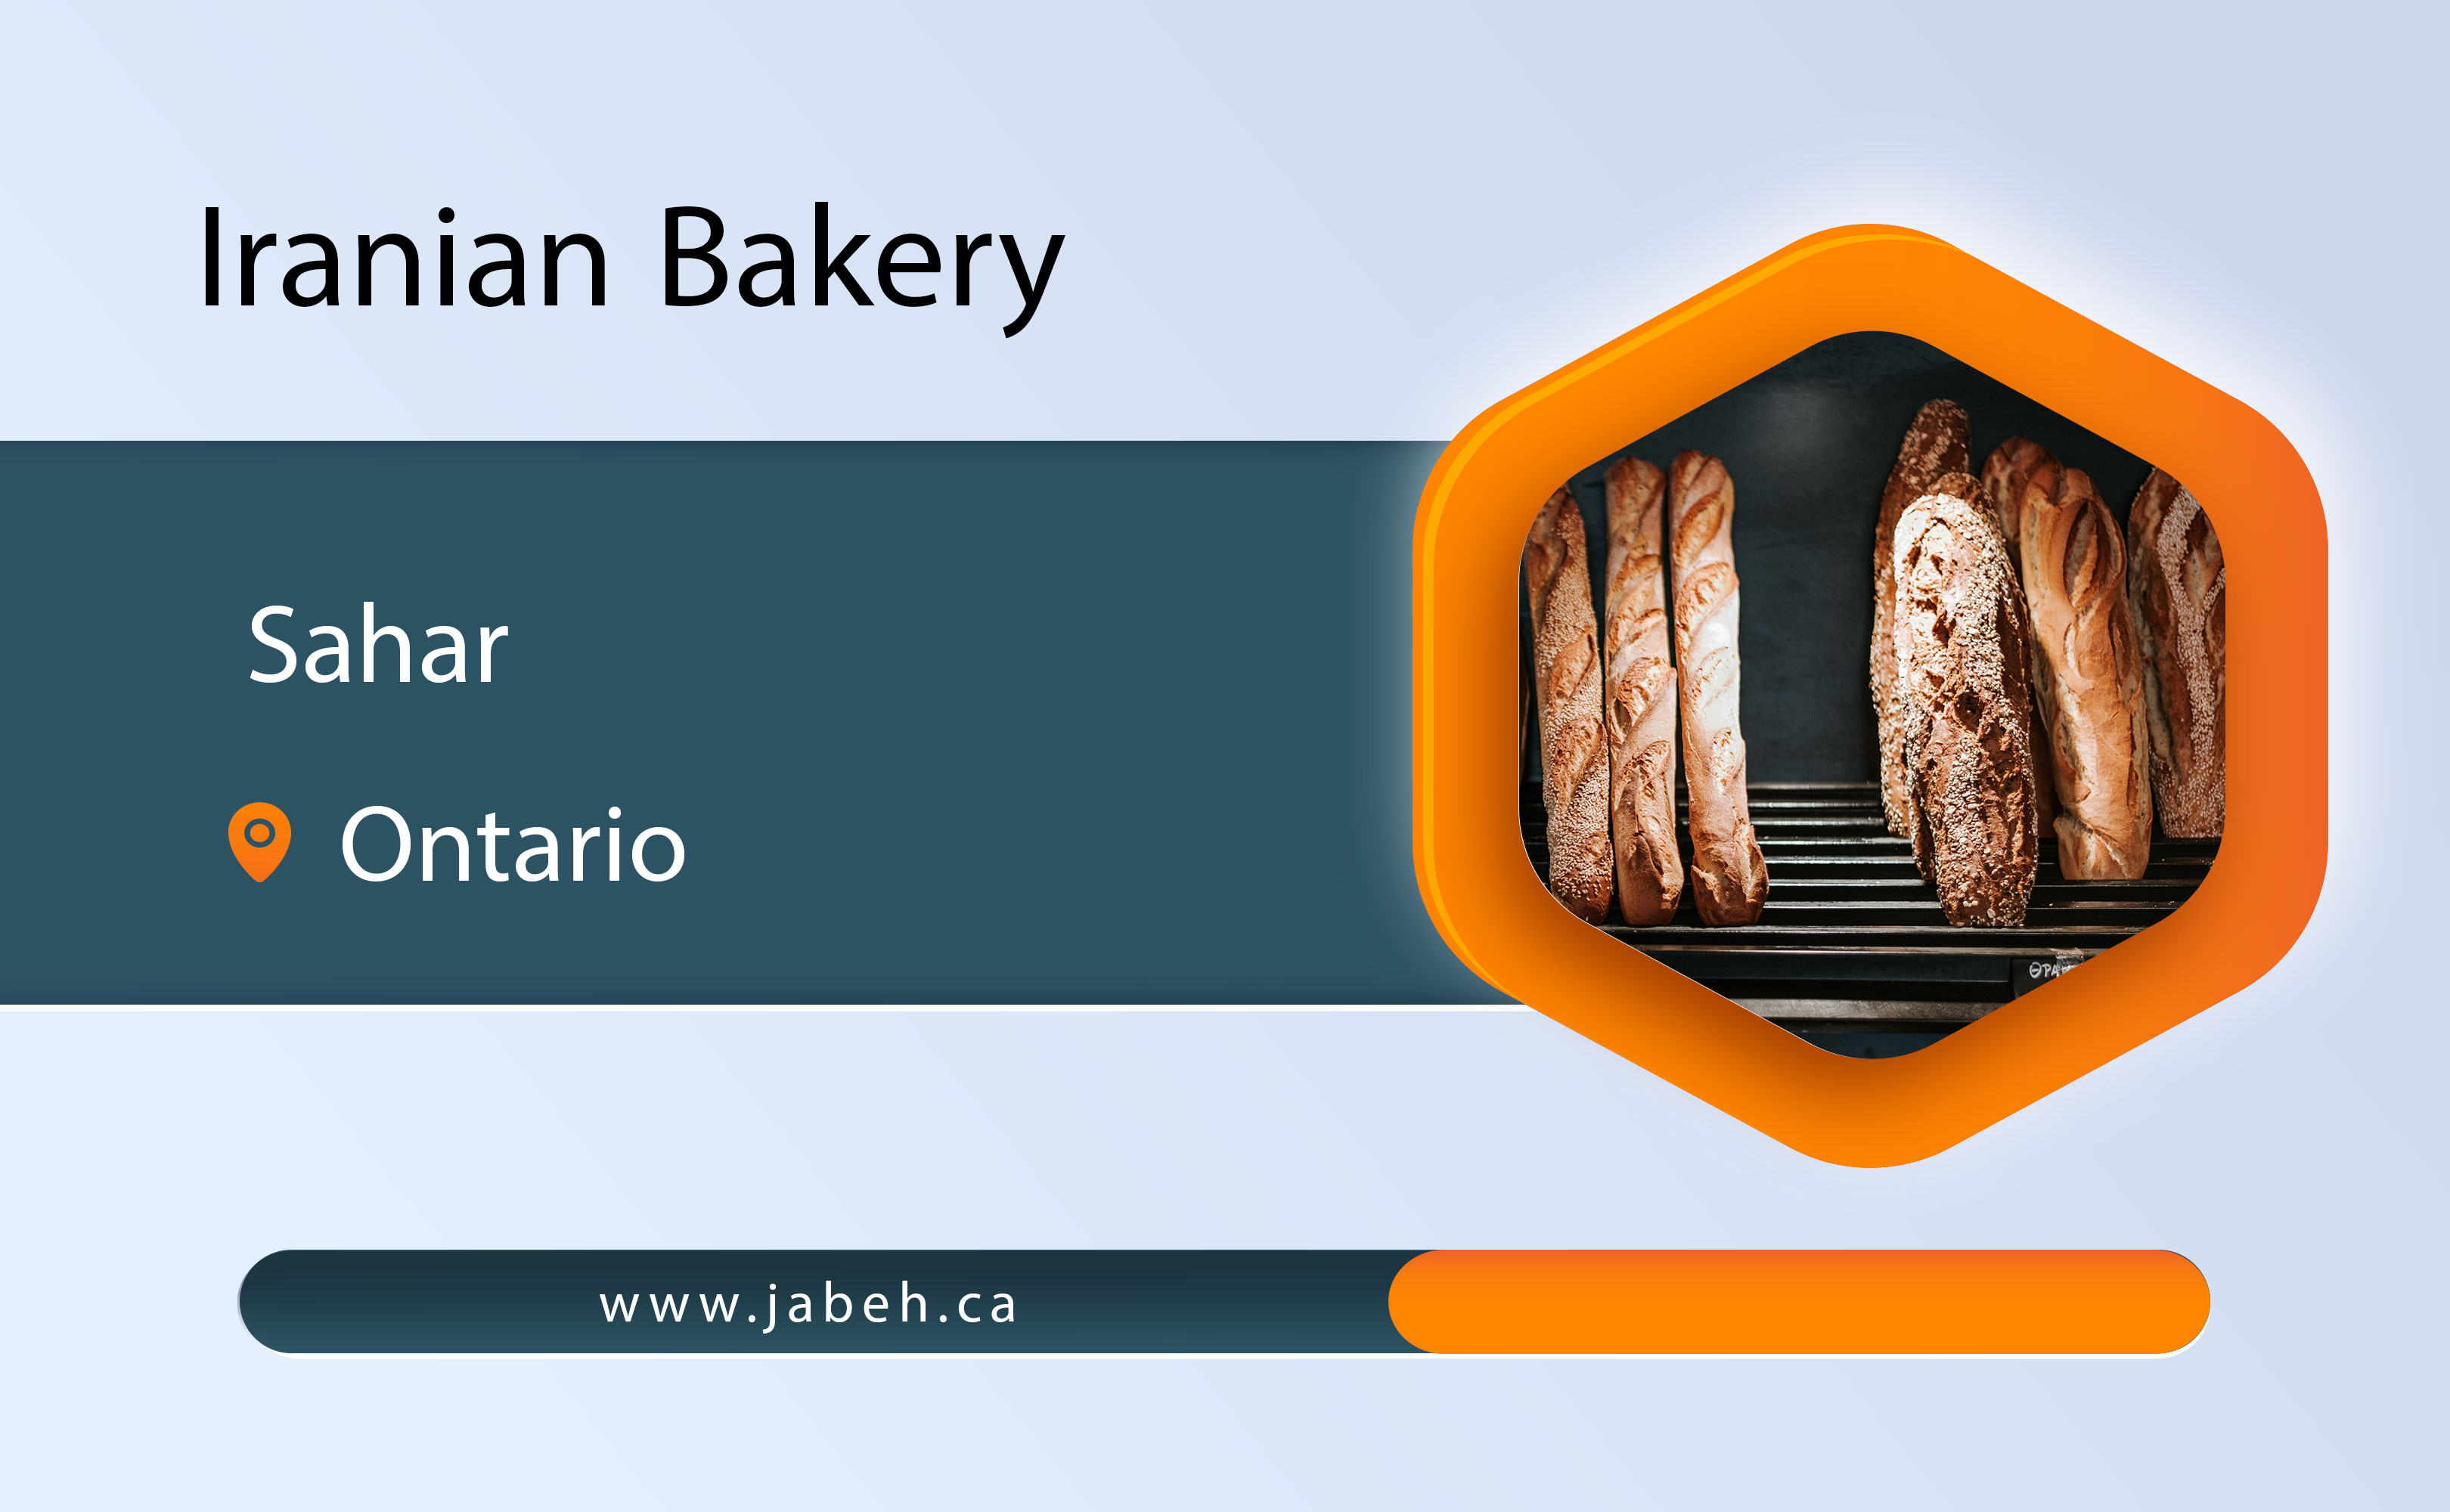 Sahar Iranian Bakery in Ontario